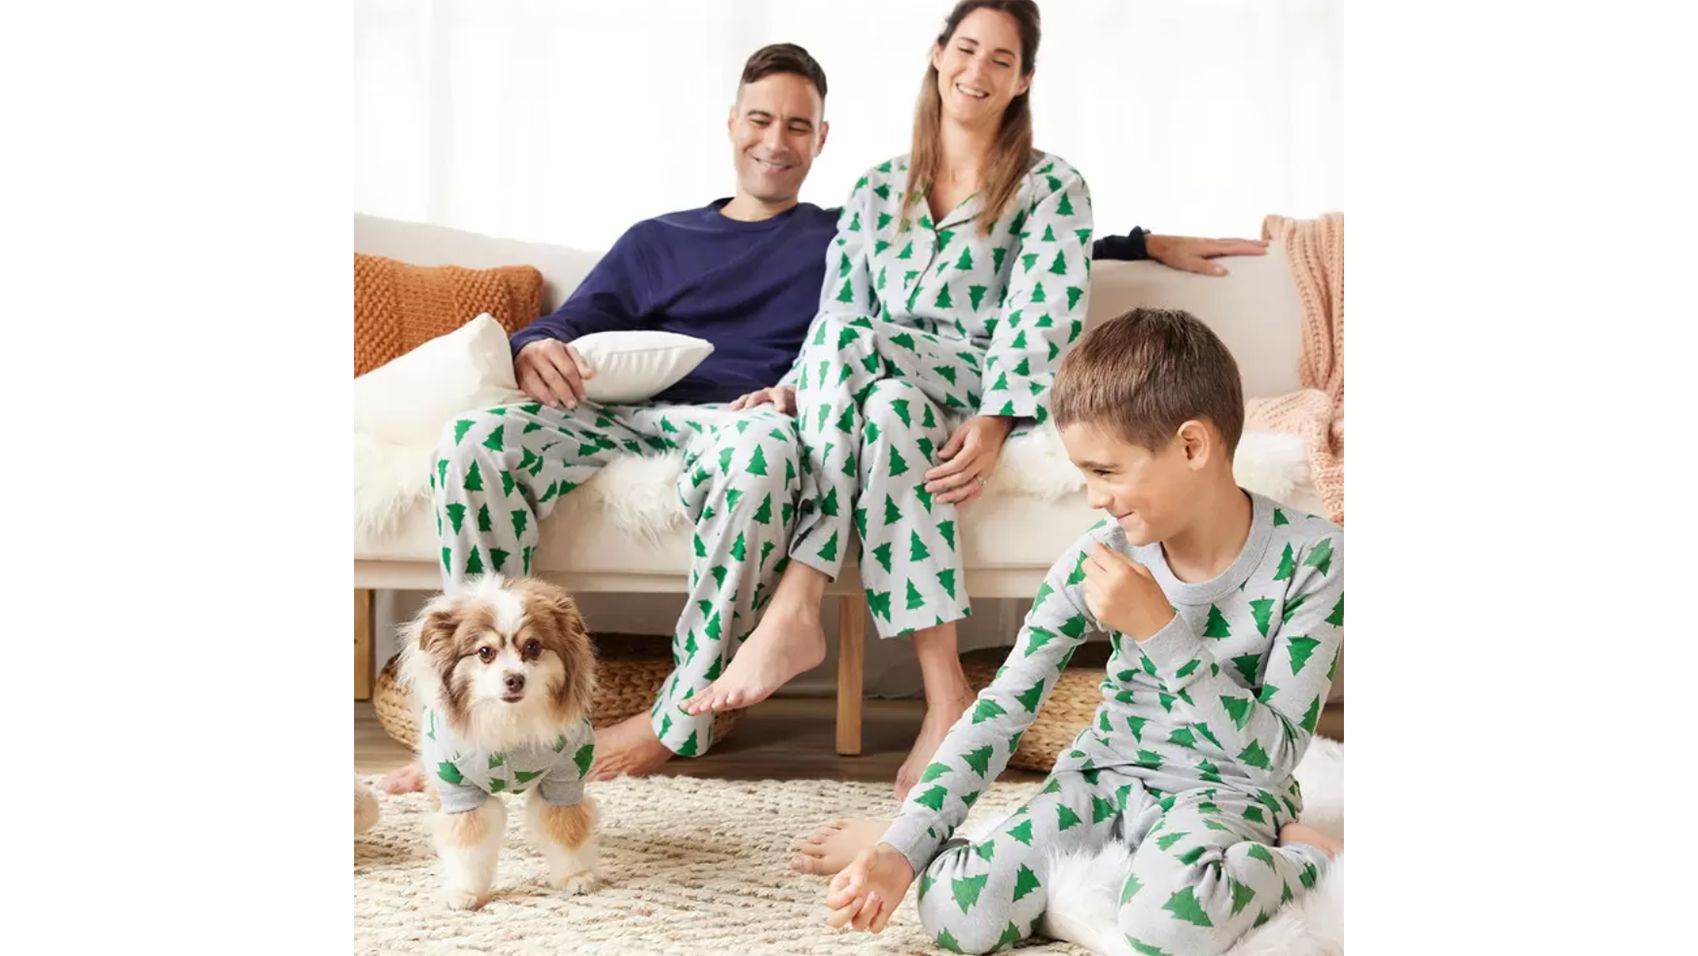 Snowflake PJ Pants Women Clothing Christmas Plaid Print Elastic